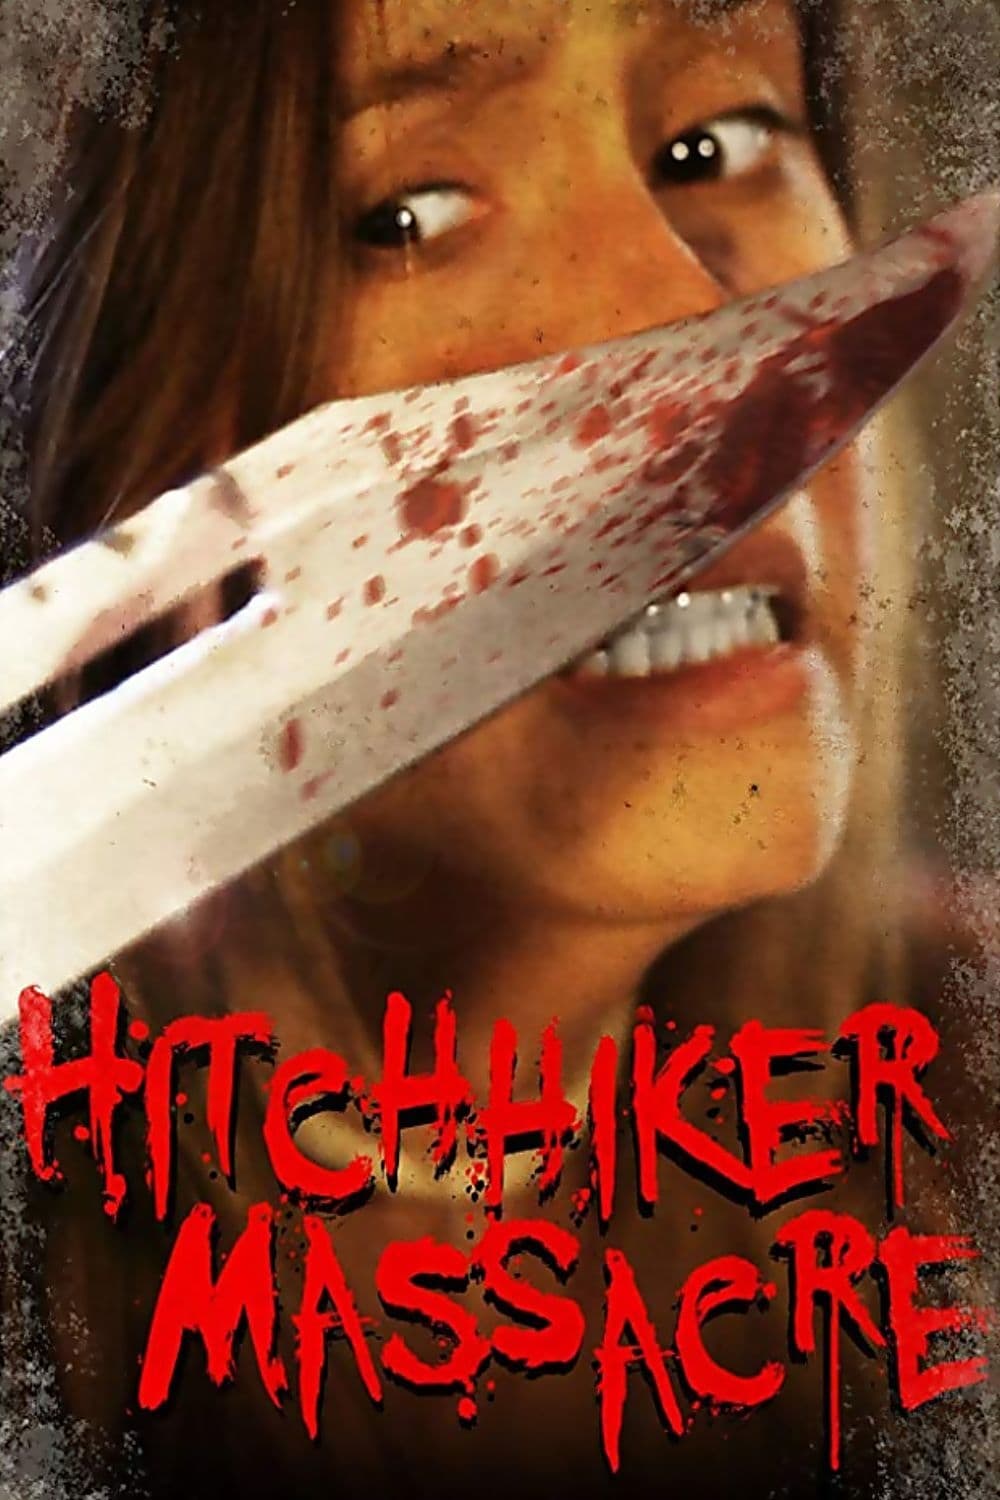 Hitchhiker Massacre